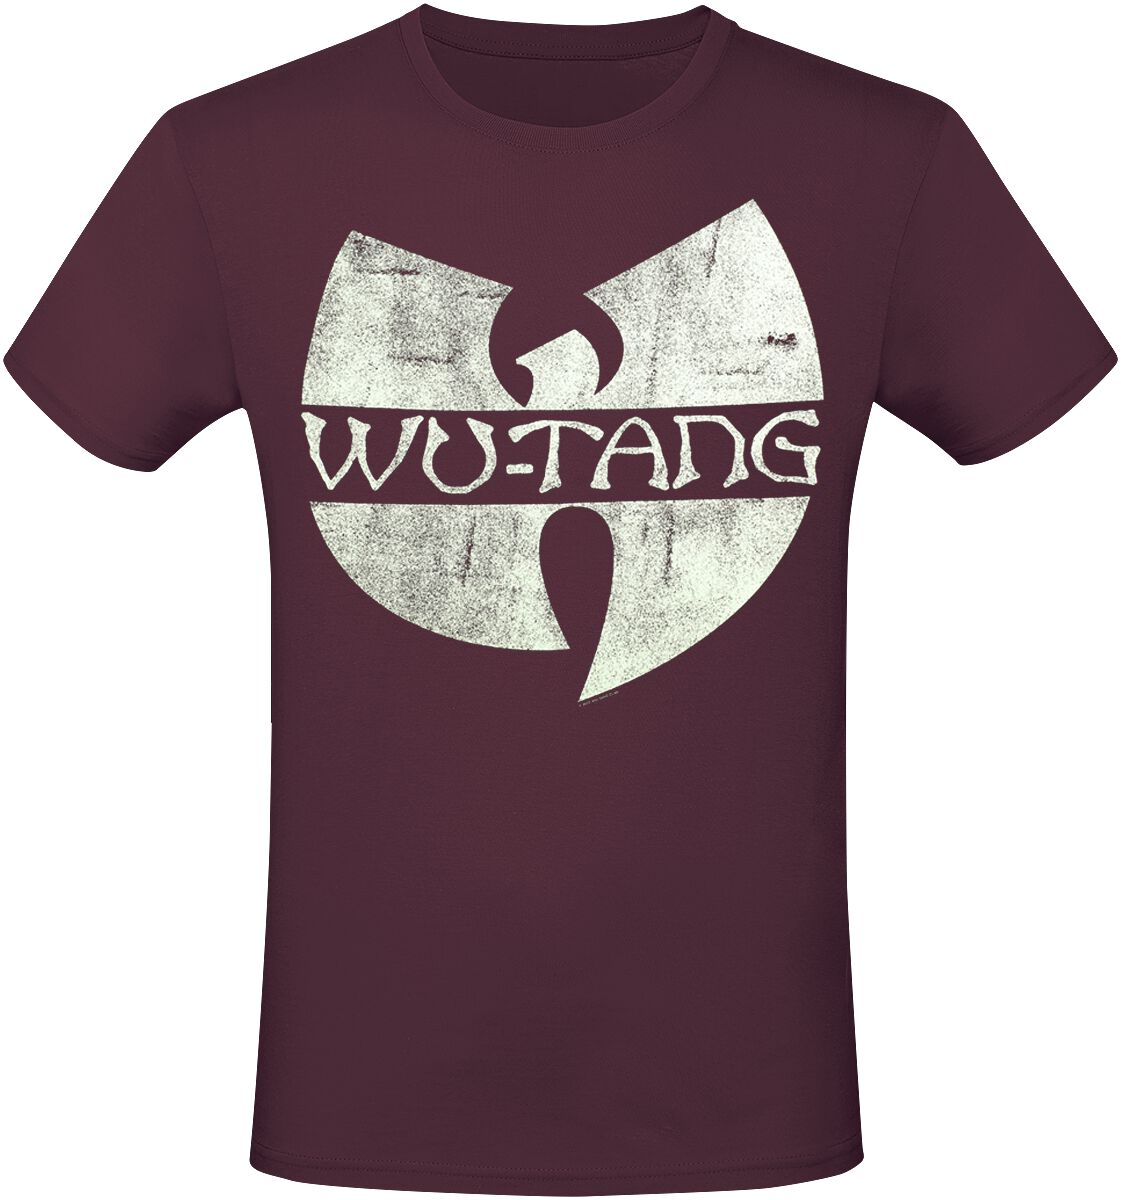 Wu-Tang Clan Logo T-Shirt rot in XL